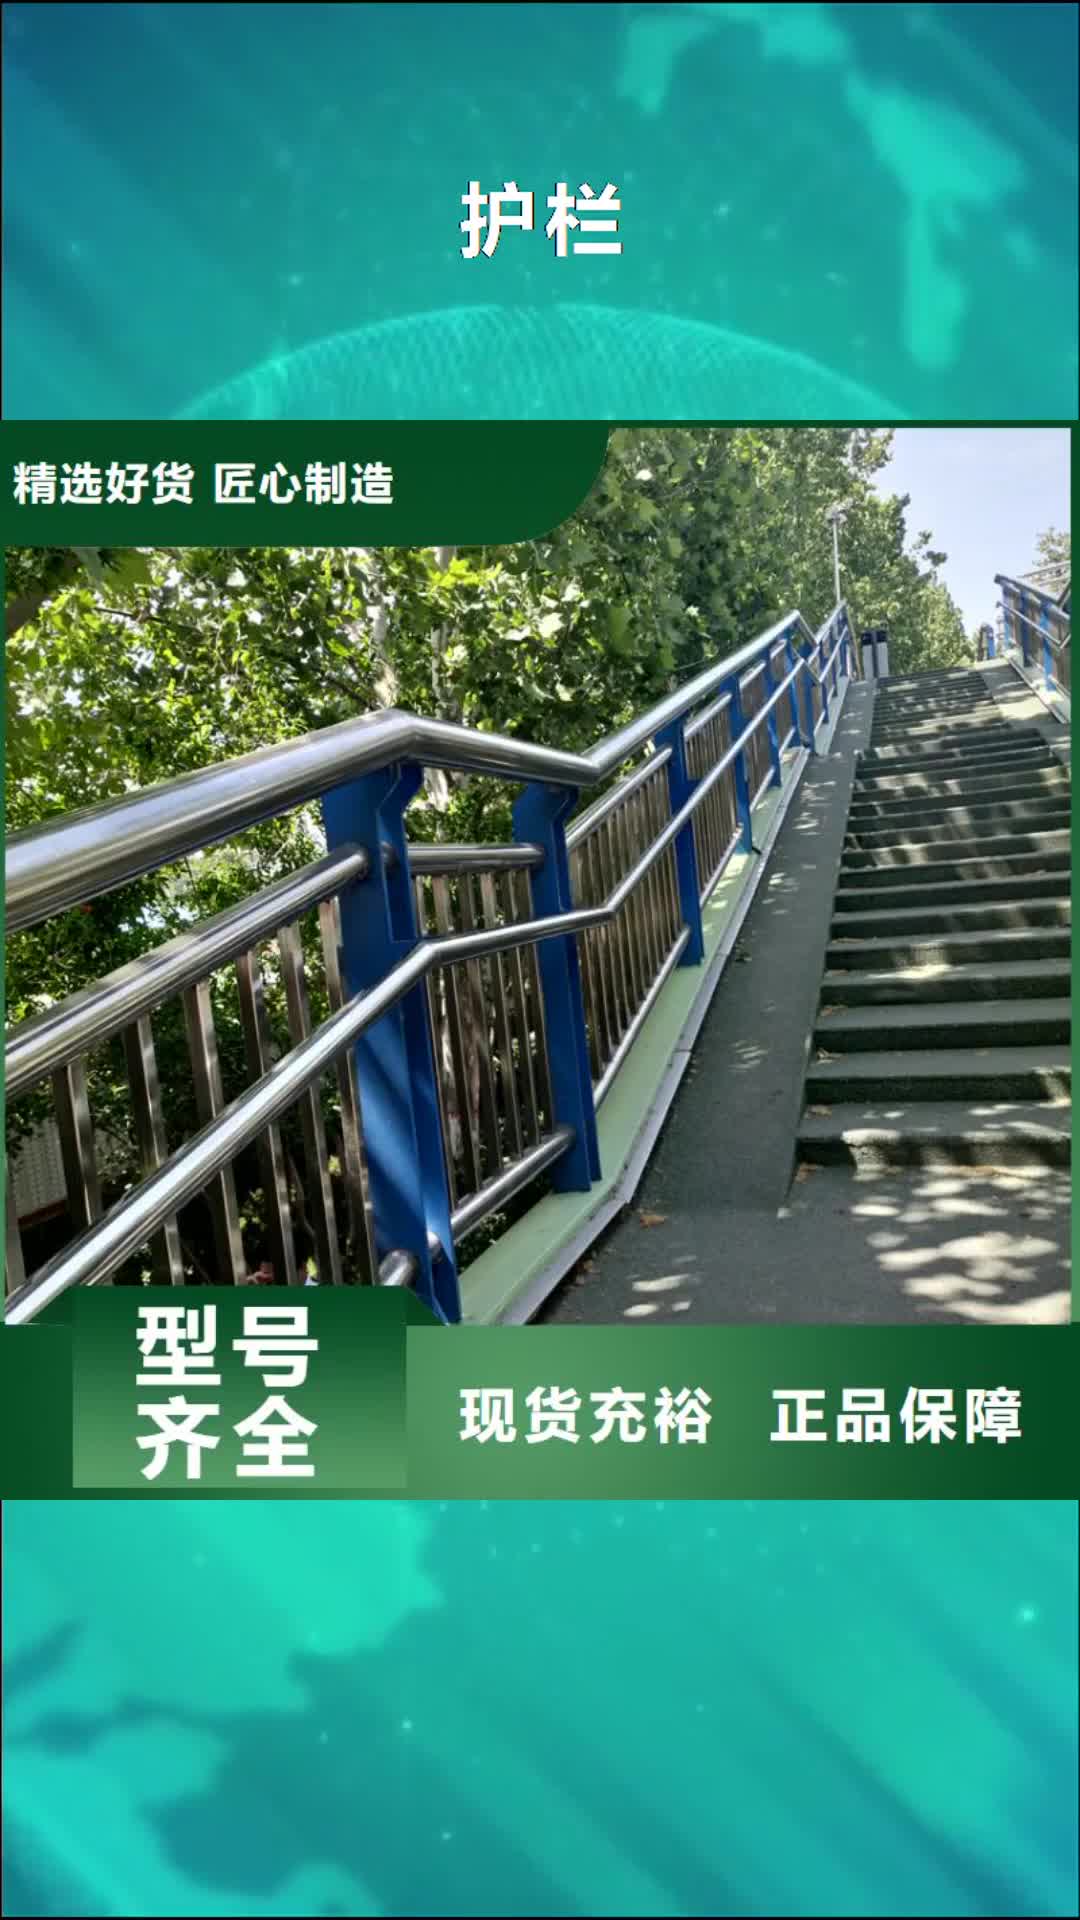 锡林郭勒 护栏,【不锈钢护栏】免费安装